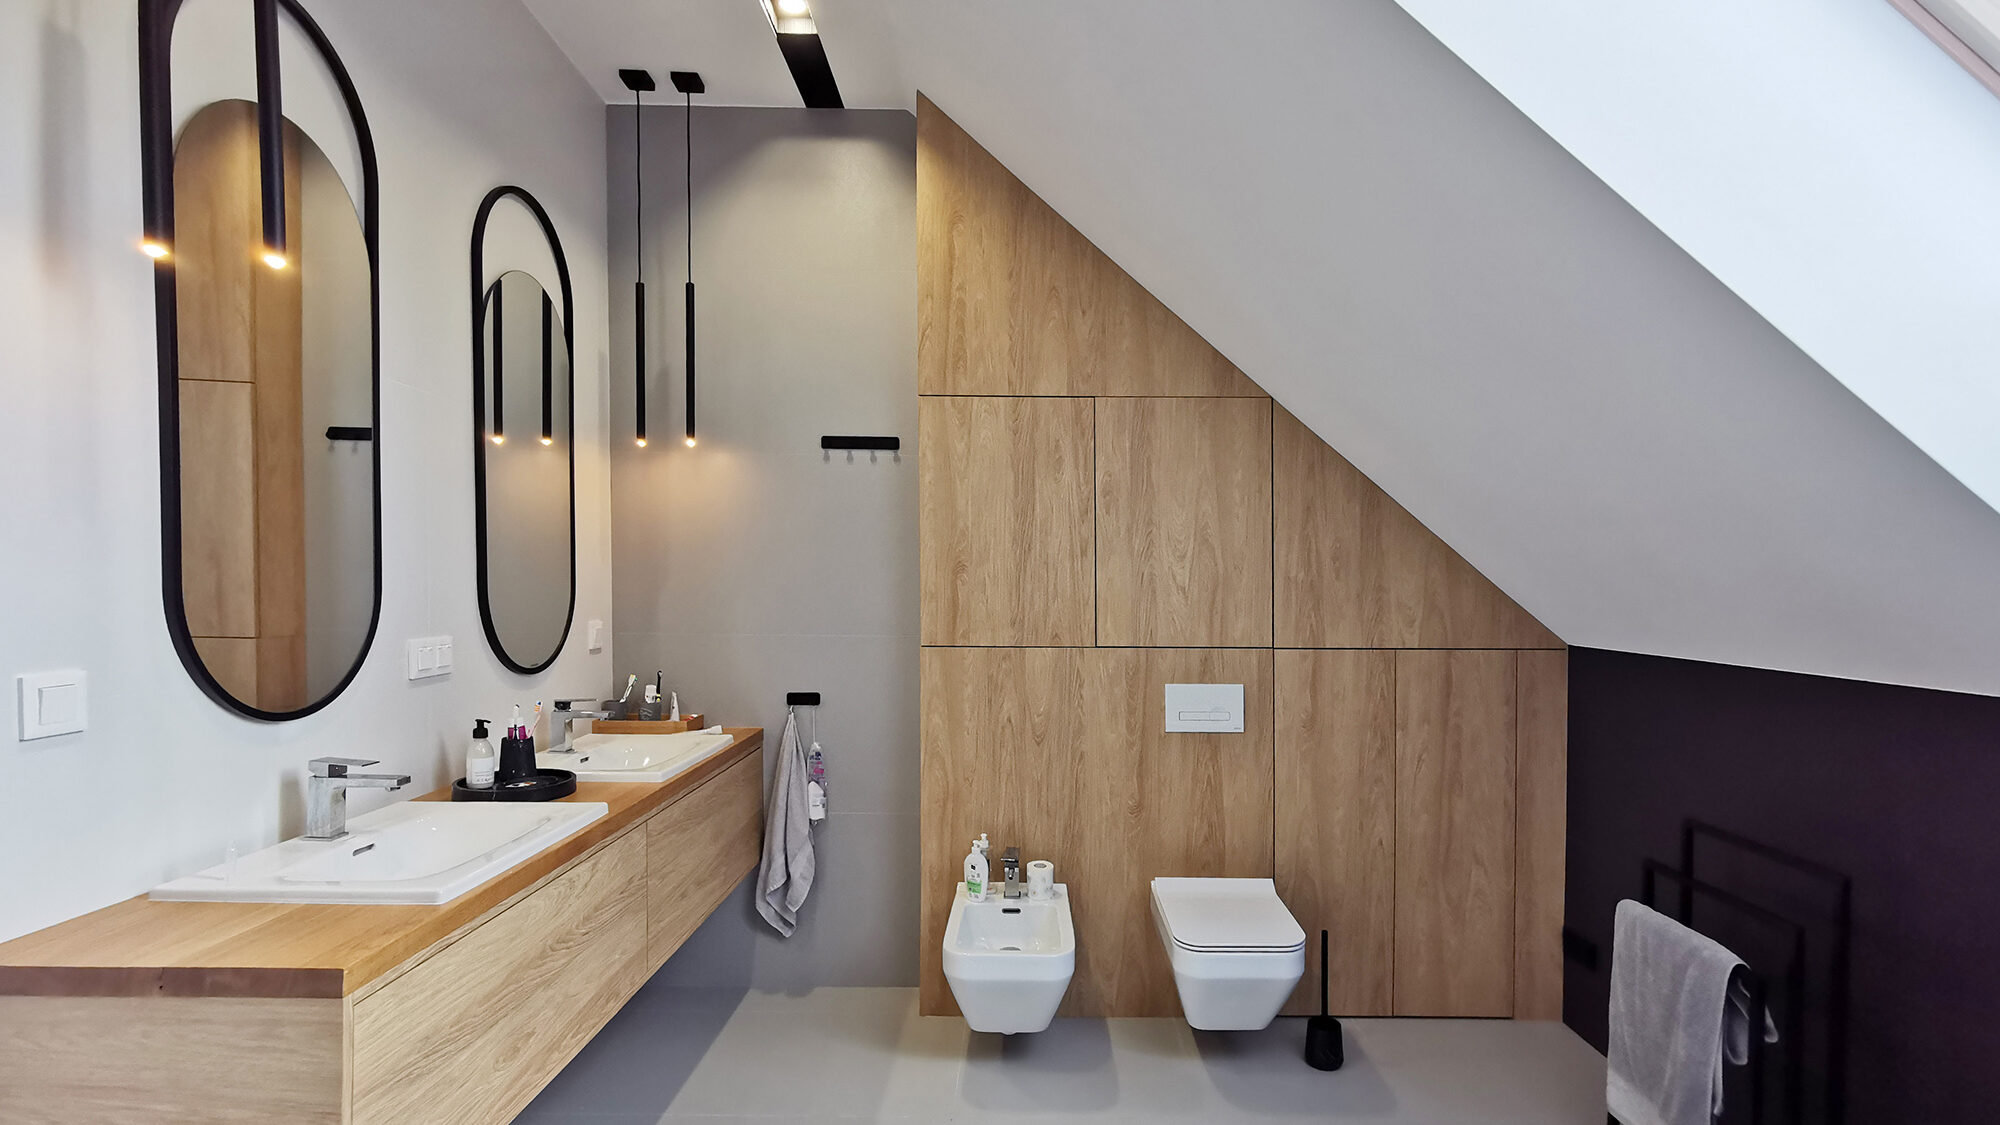 Projektowanie wnętrz Wrocław WIUMI przedstawia łazienkę z dwoma lustrami i umywalkami oraz ubikacją i bidetem.